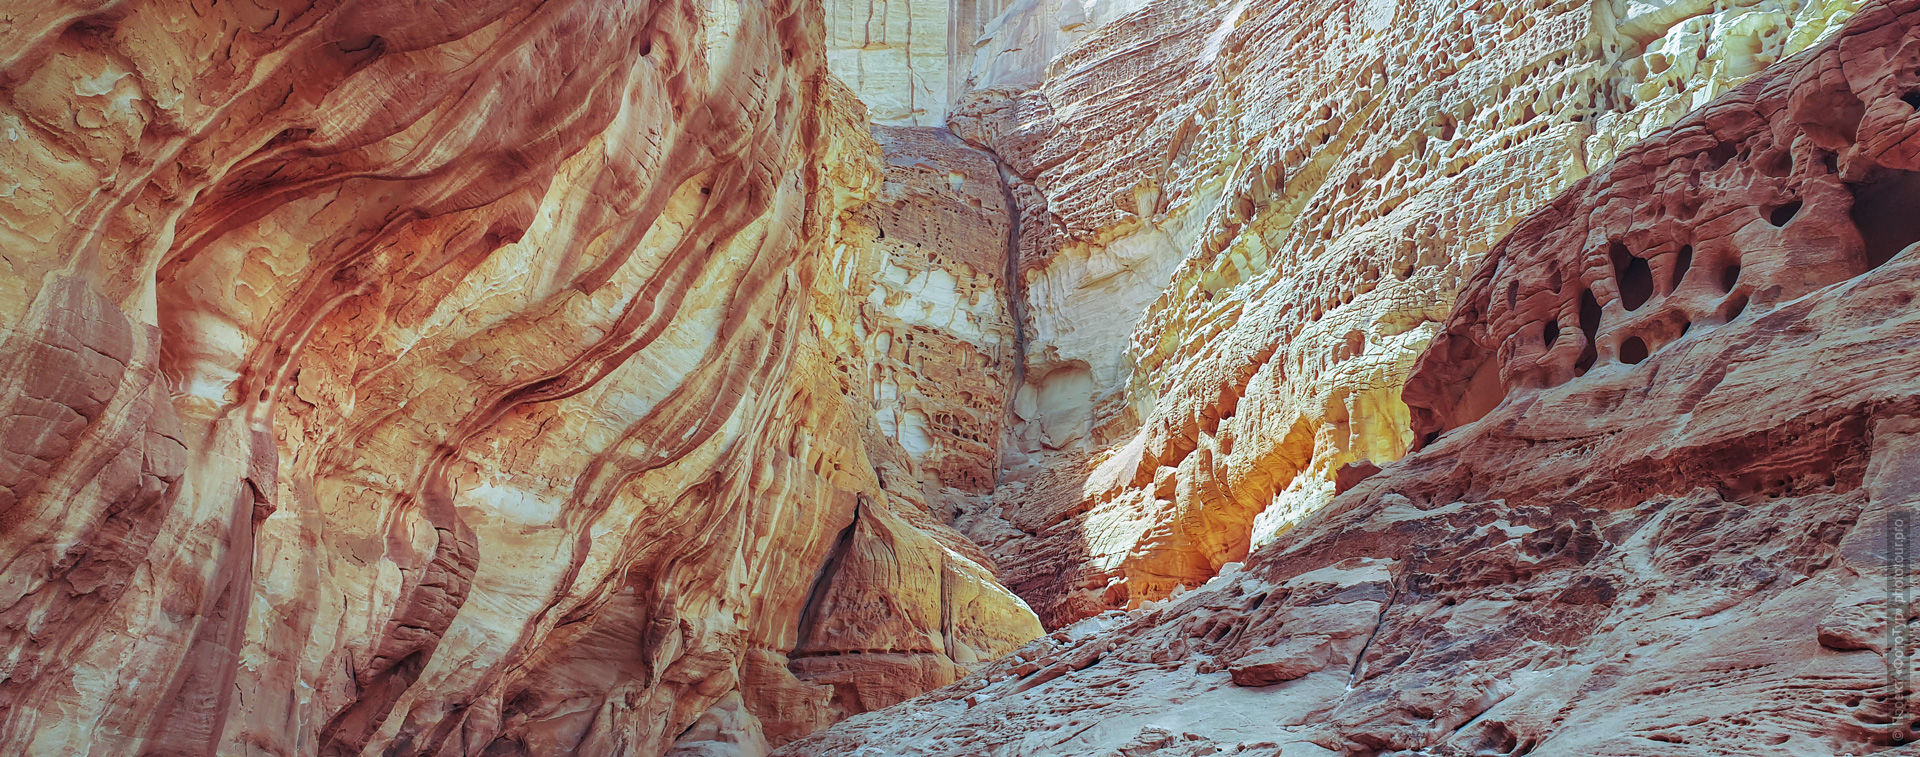 Цветные стены Закрытого Каньона, Синайская Пустыня, Дахаб, Египет.